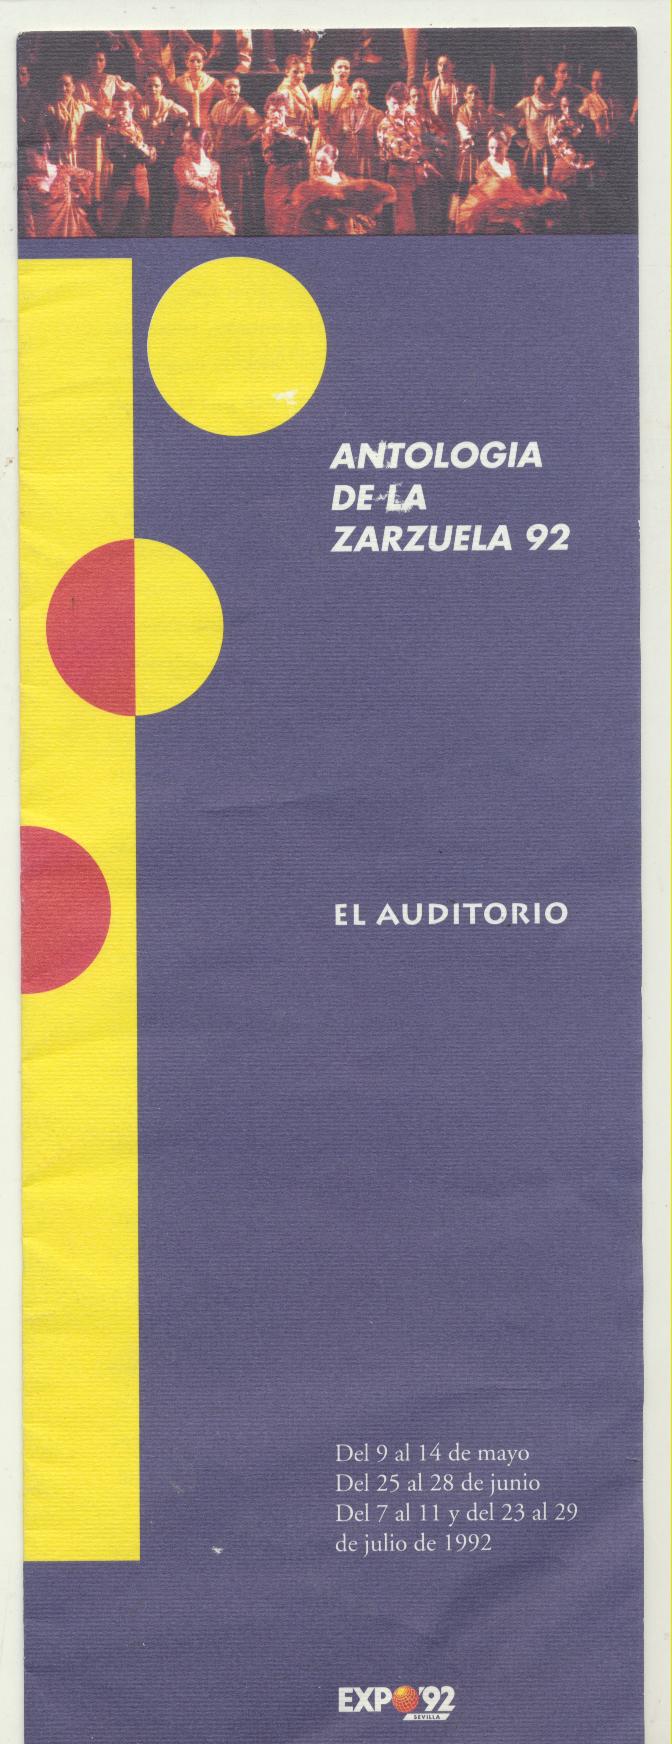 Folleto (30x11) 10 páginas. Antología de la Zarzuela 92. Expo 92